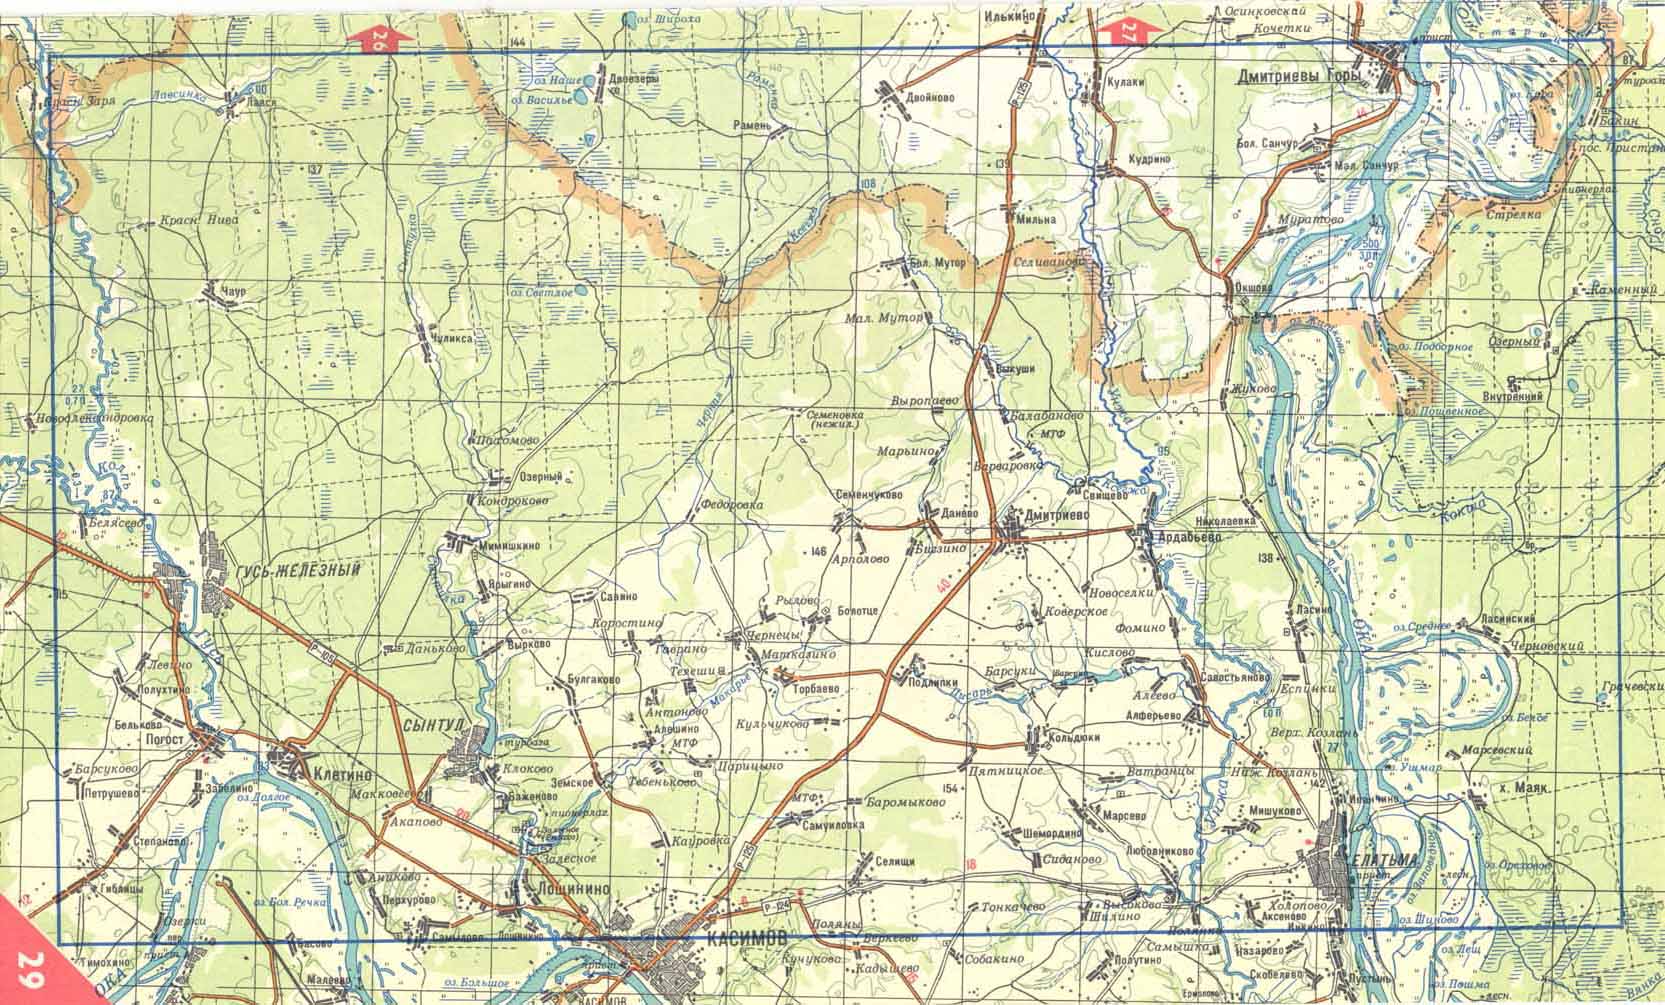 Карта киржачского района